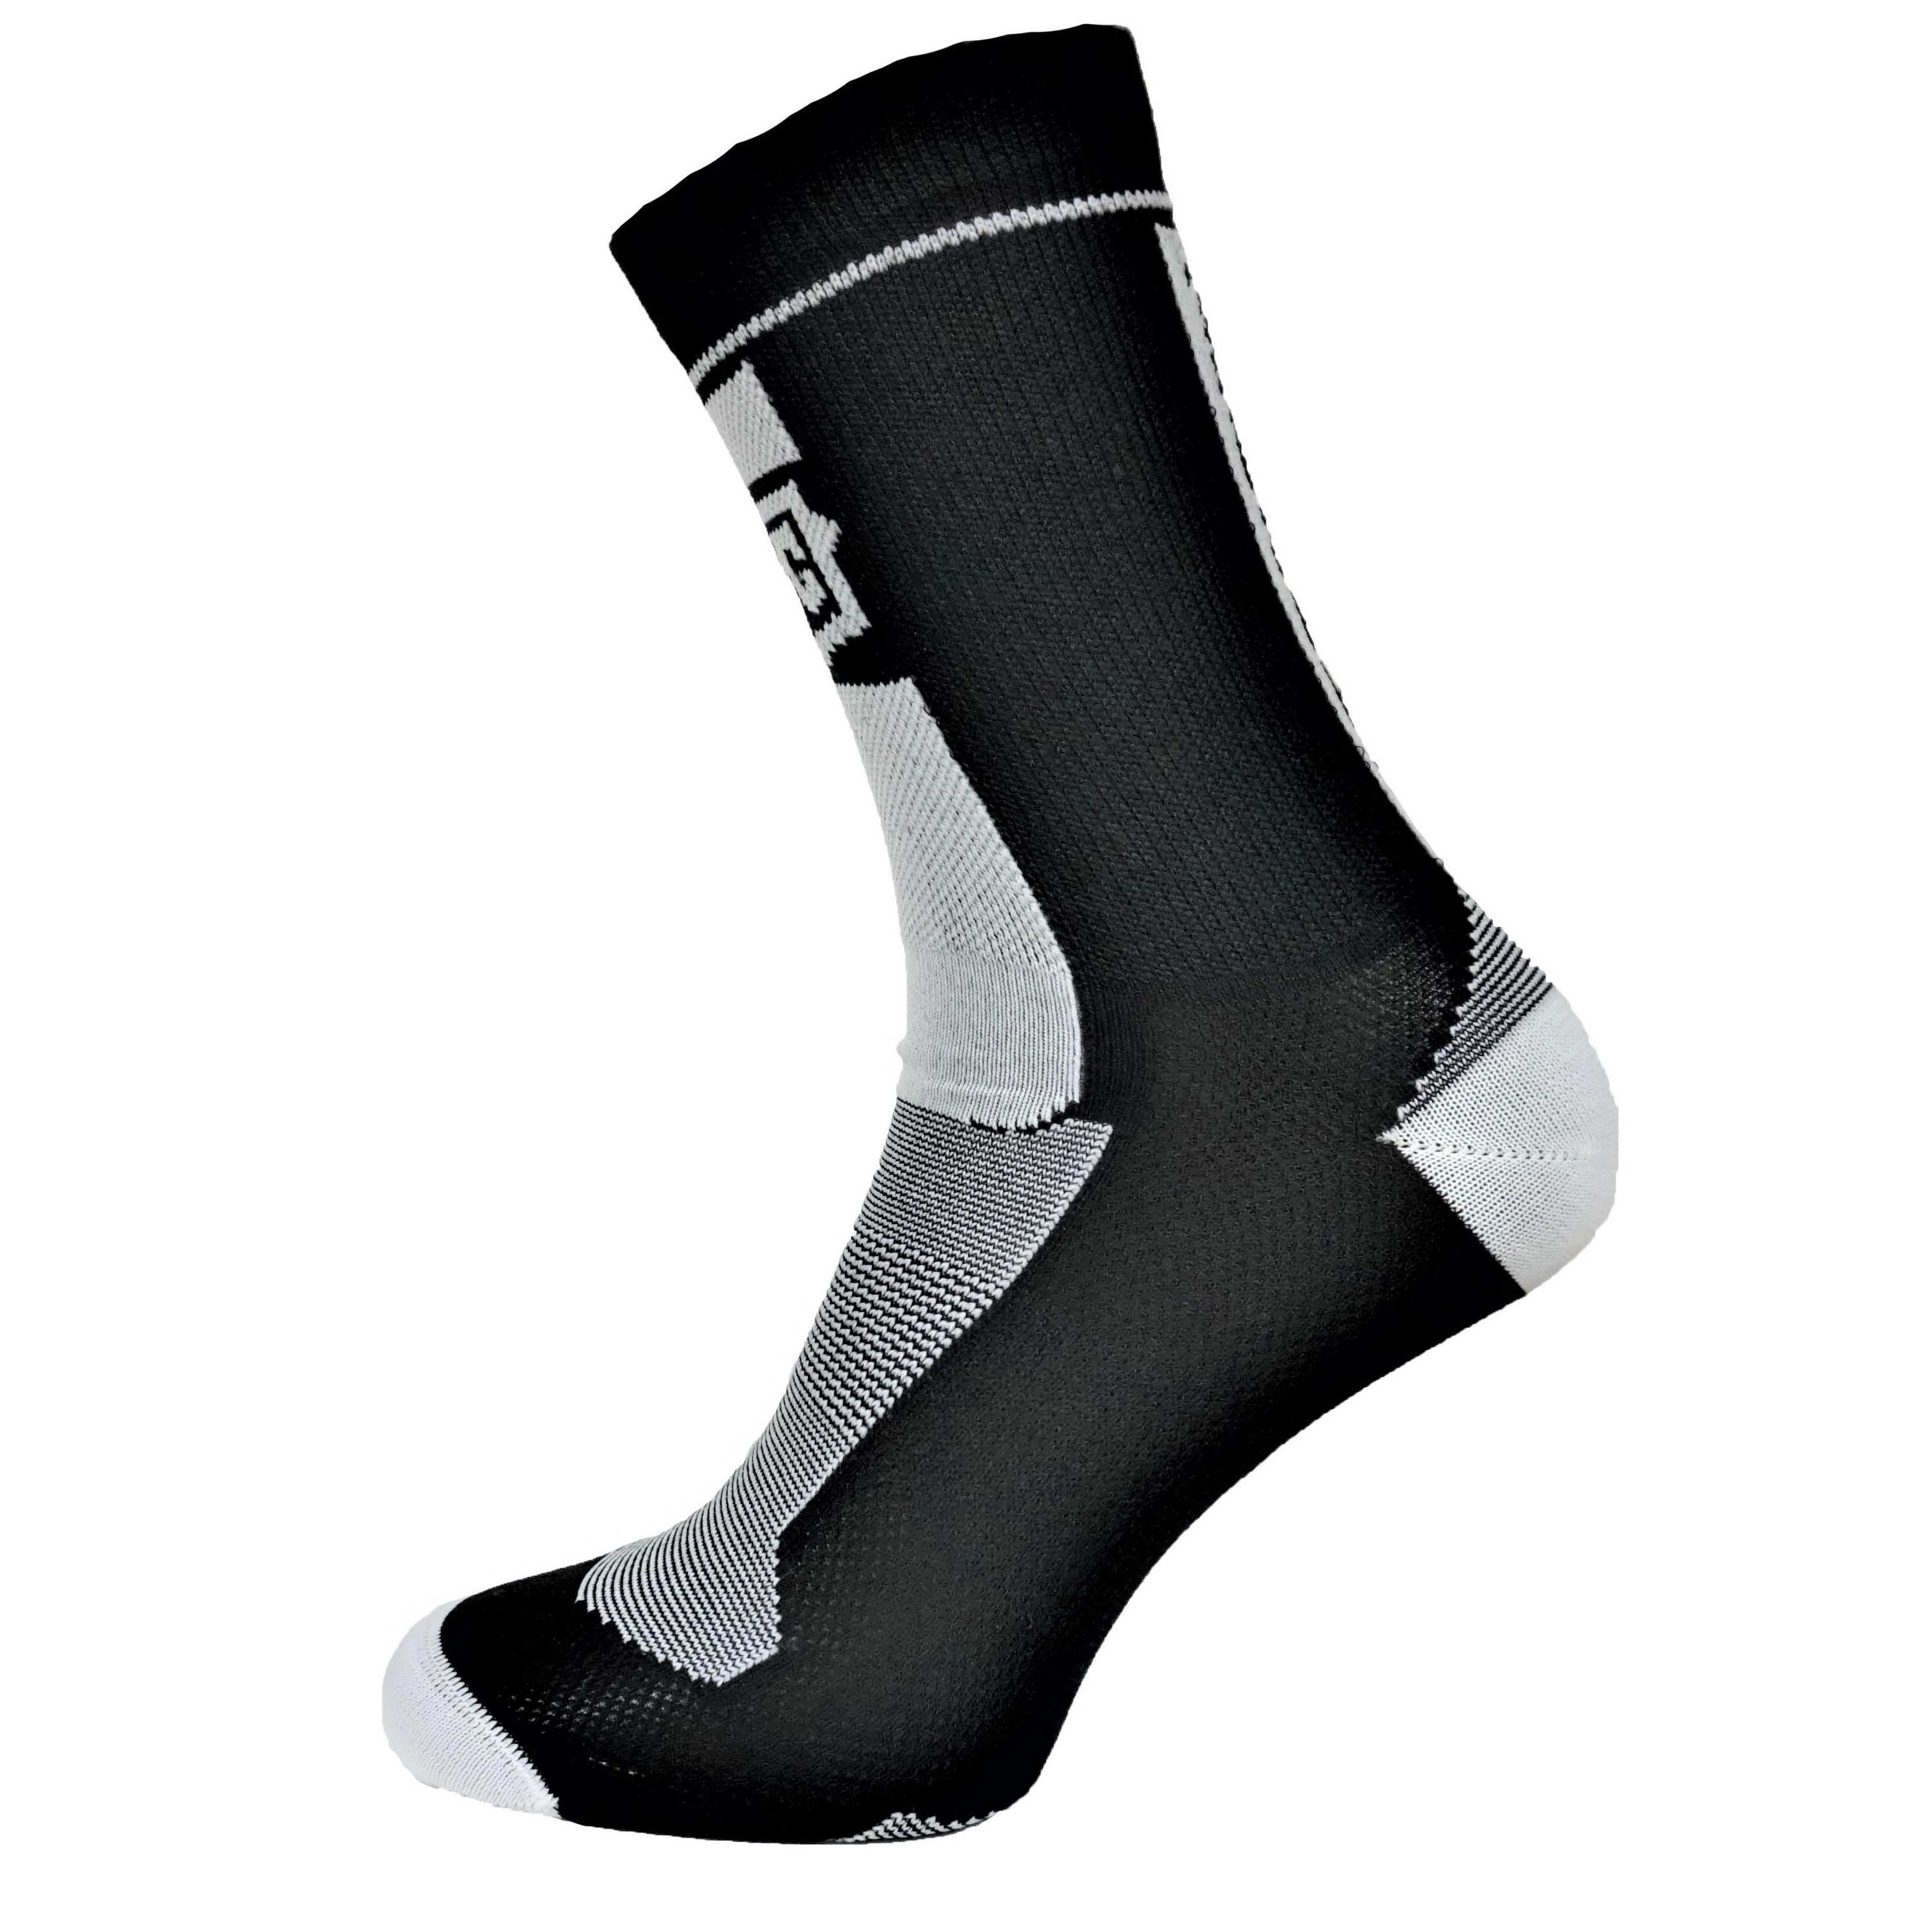 Ponožky MelCon silver antibakteriální černo bílé Velikost: 35 - 38 EU